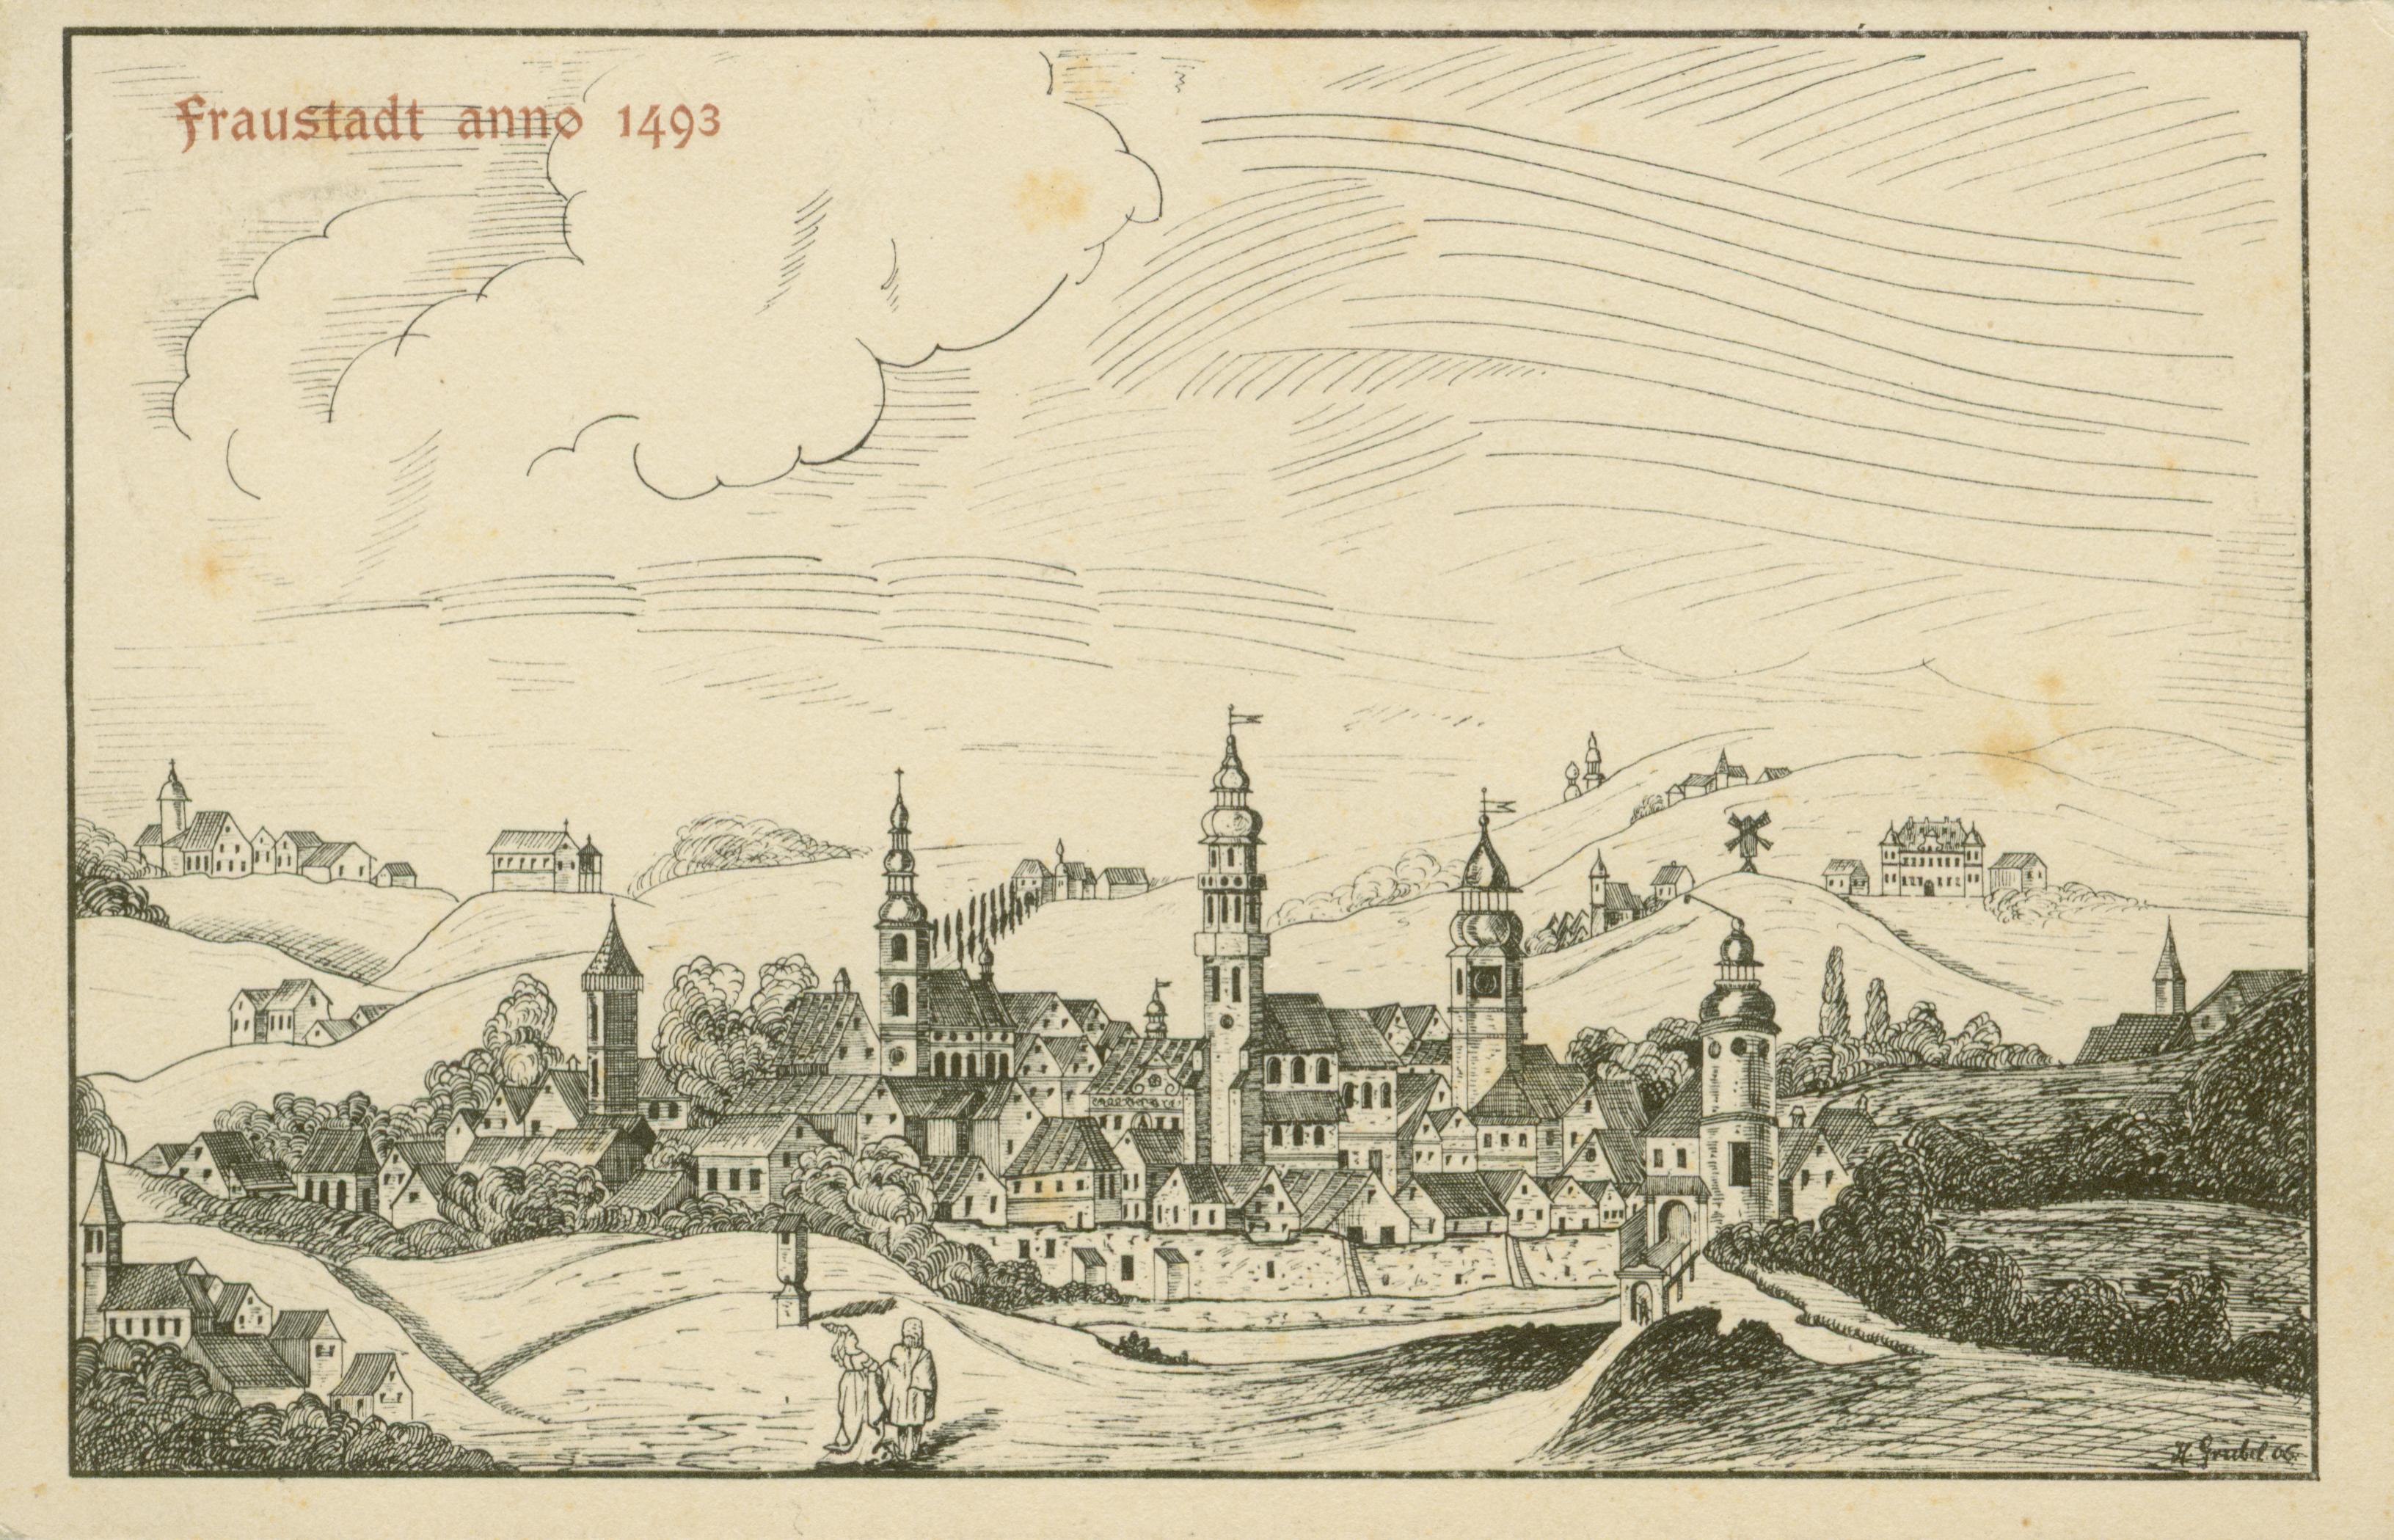 Wschowa- widok z 1493 roku